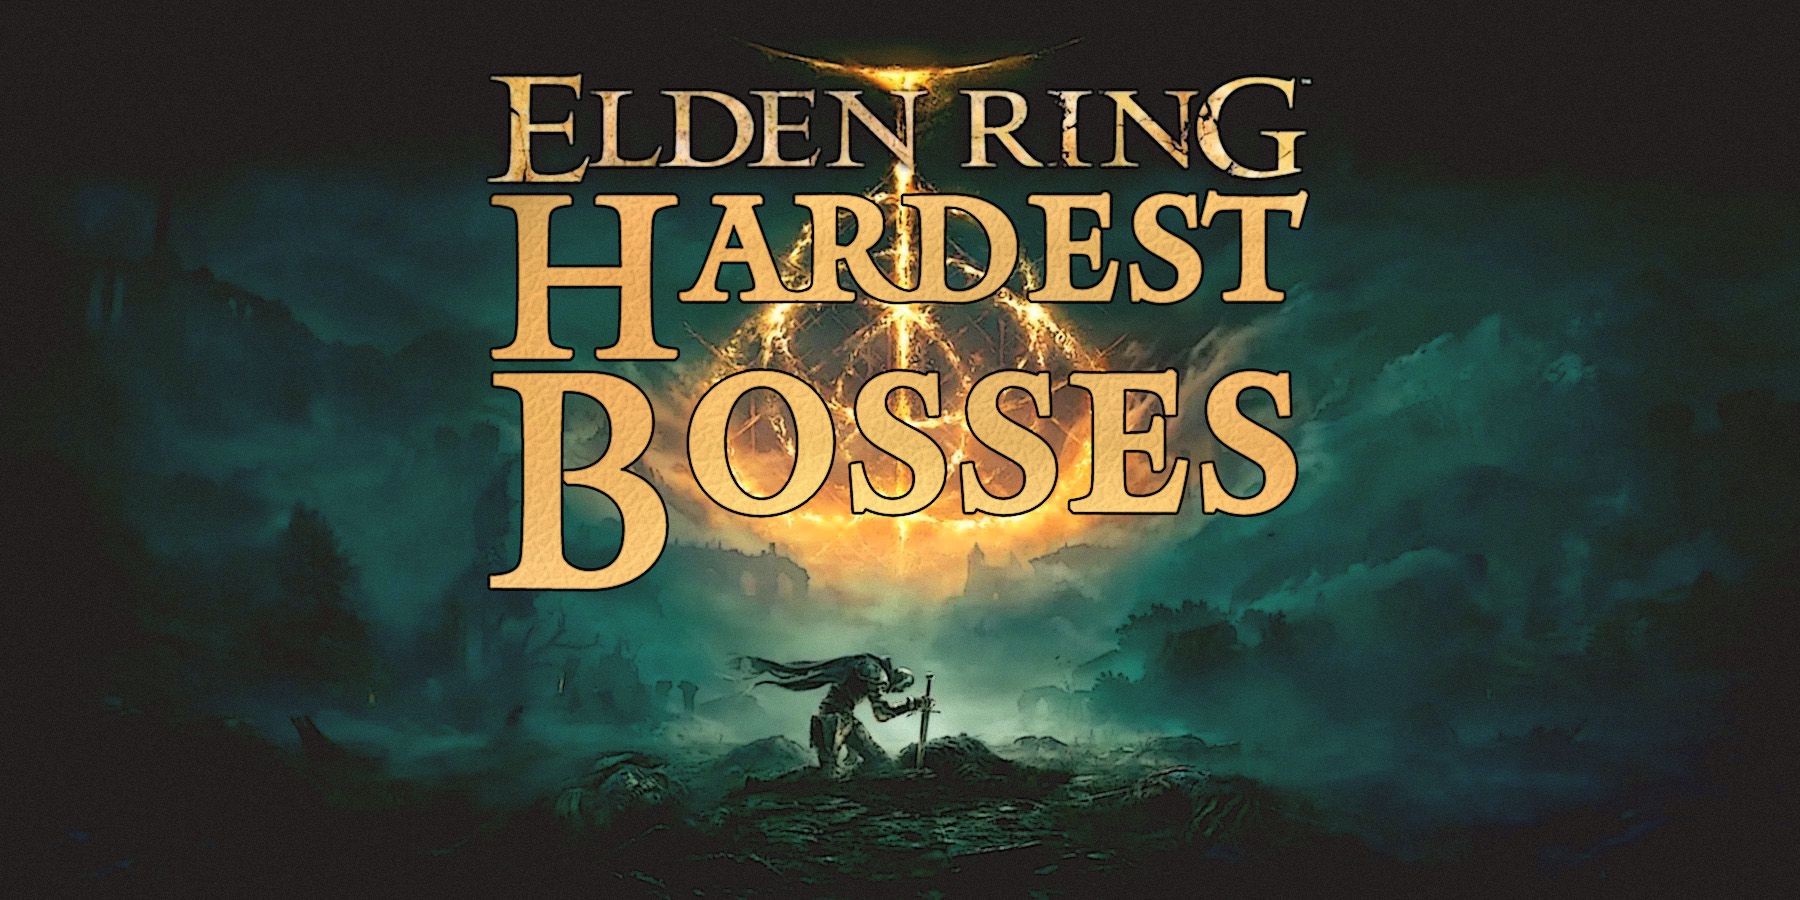 Elden Ring cover artwork hardest bosses tagline